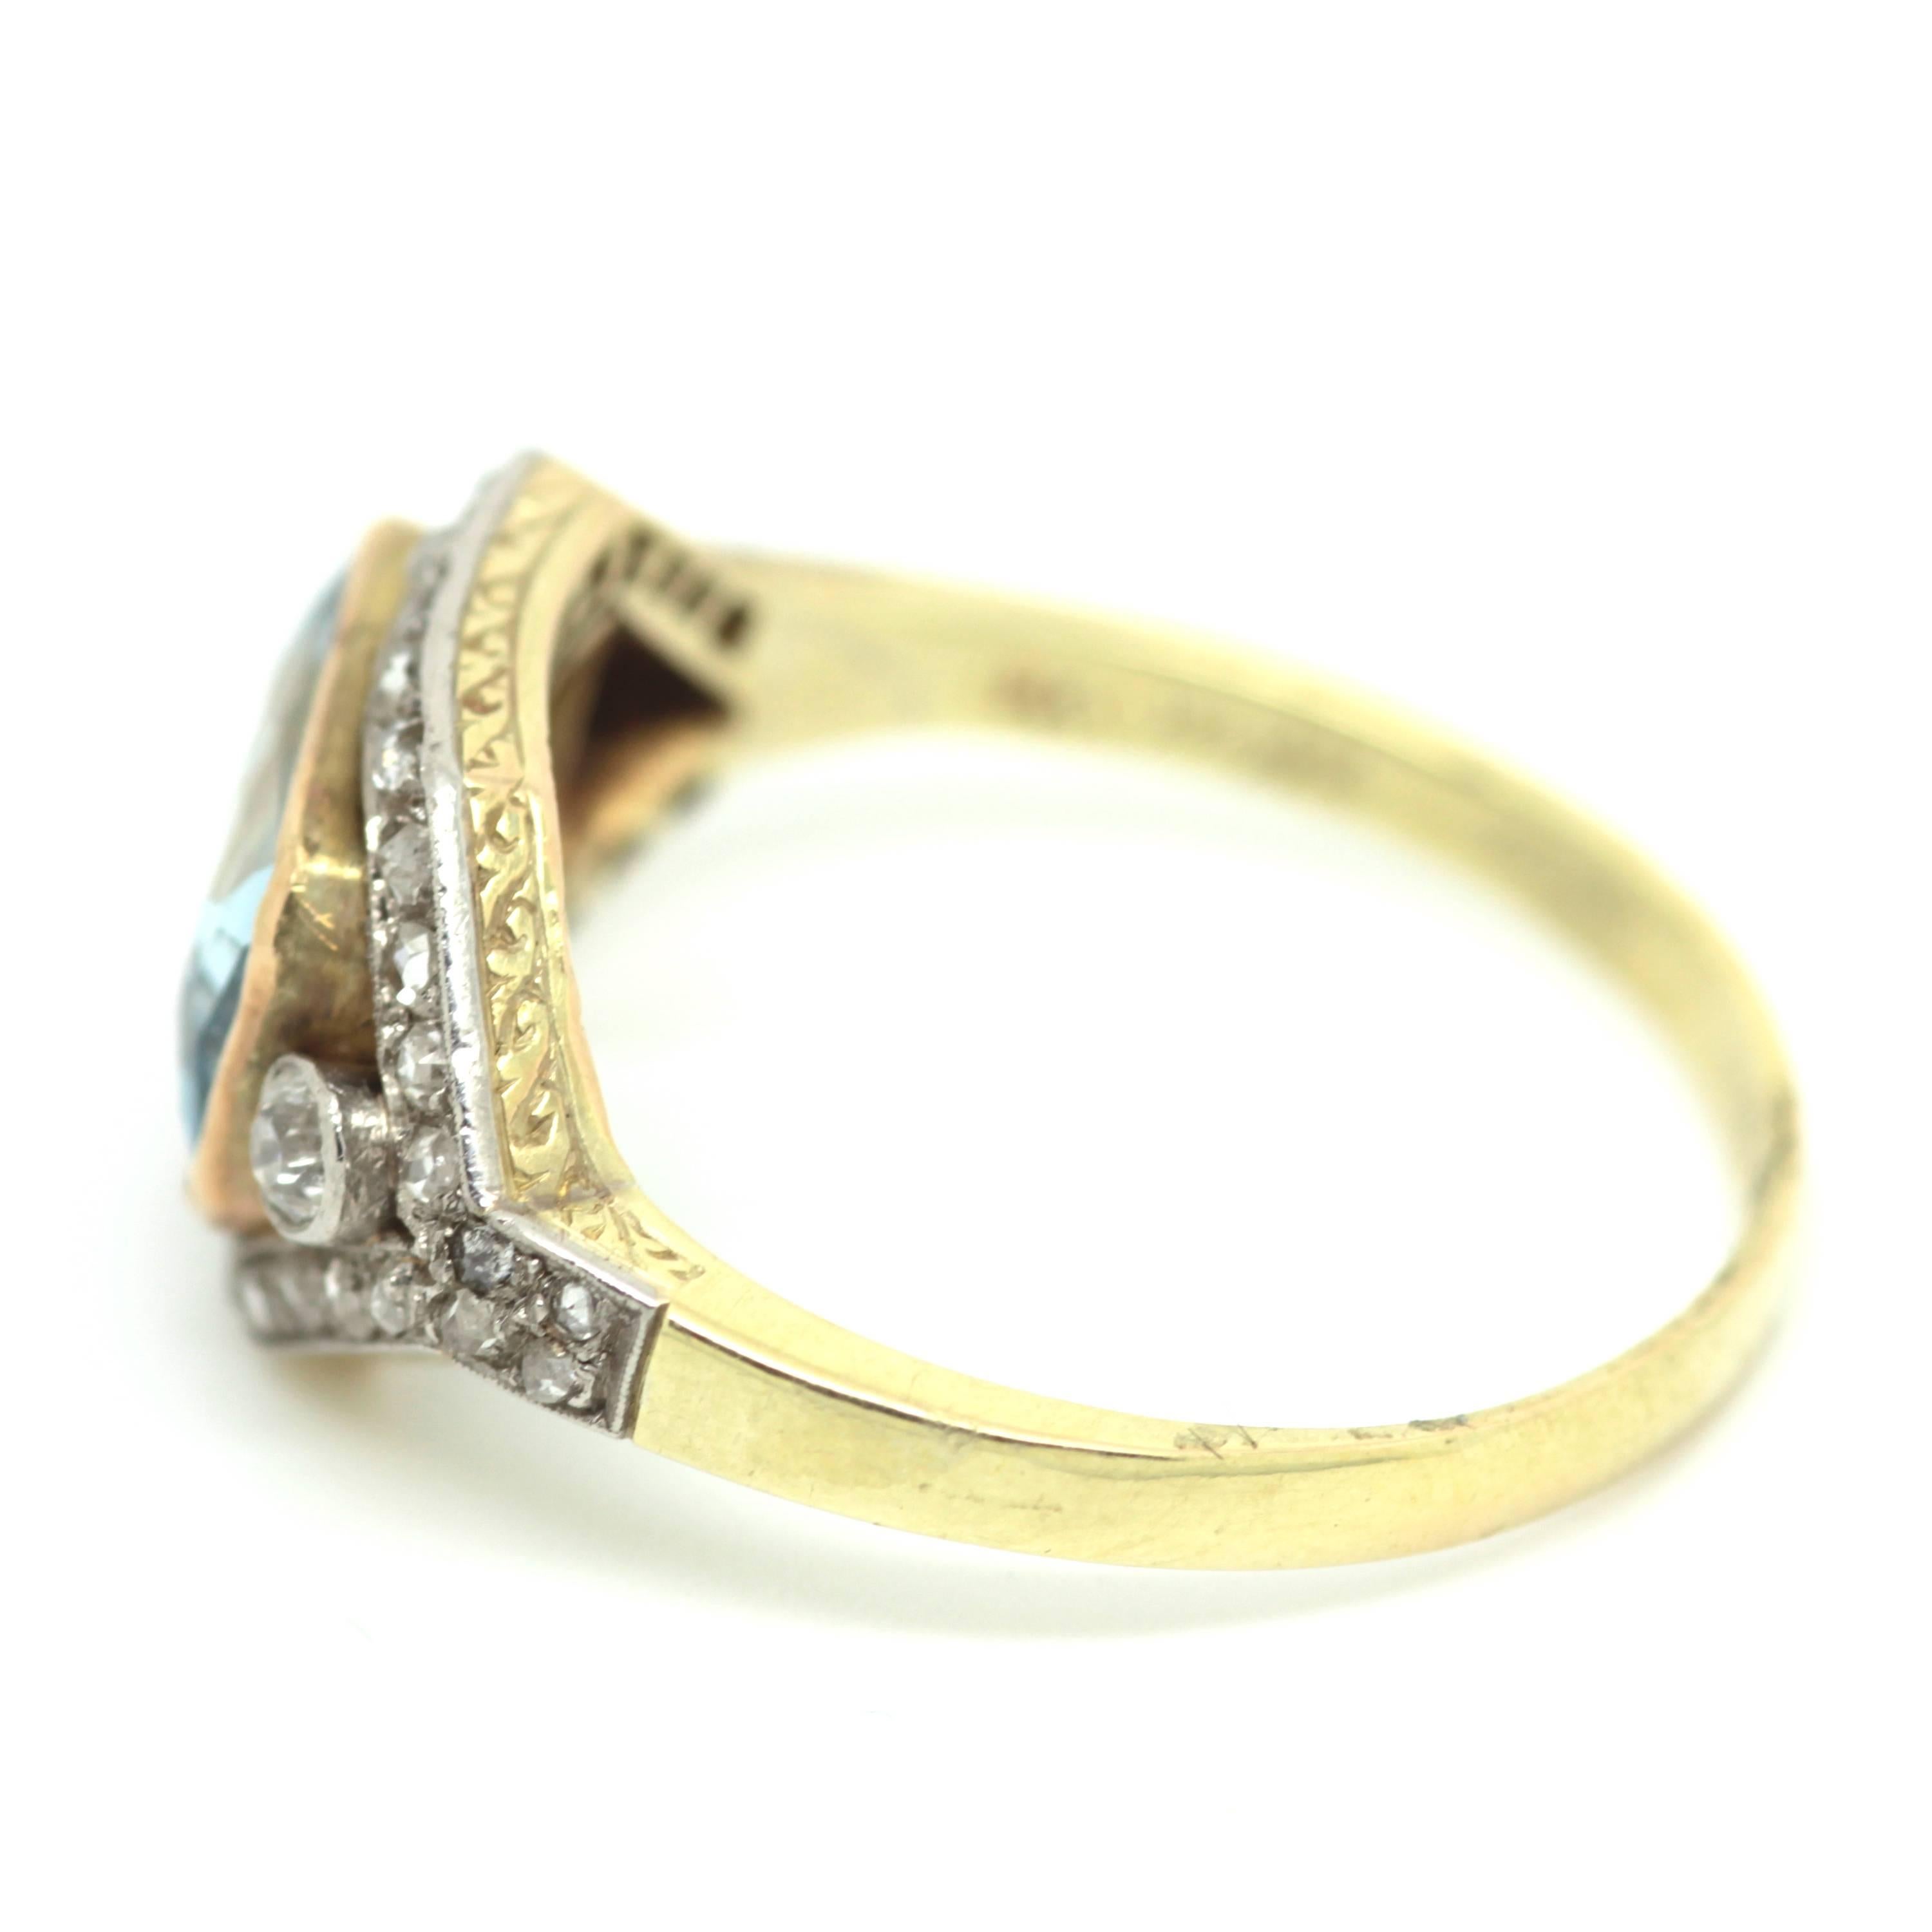 Art deco Aquamarine and diamond ring set in 18ct gold and platinum. Circa: 1920
